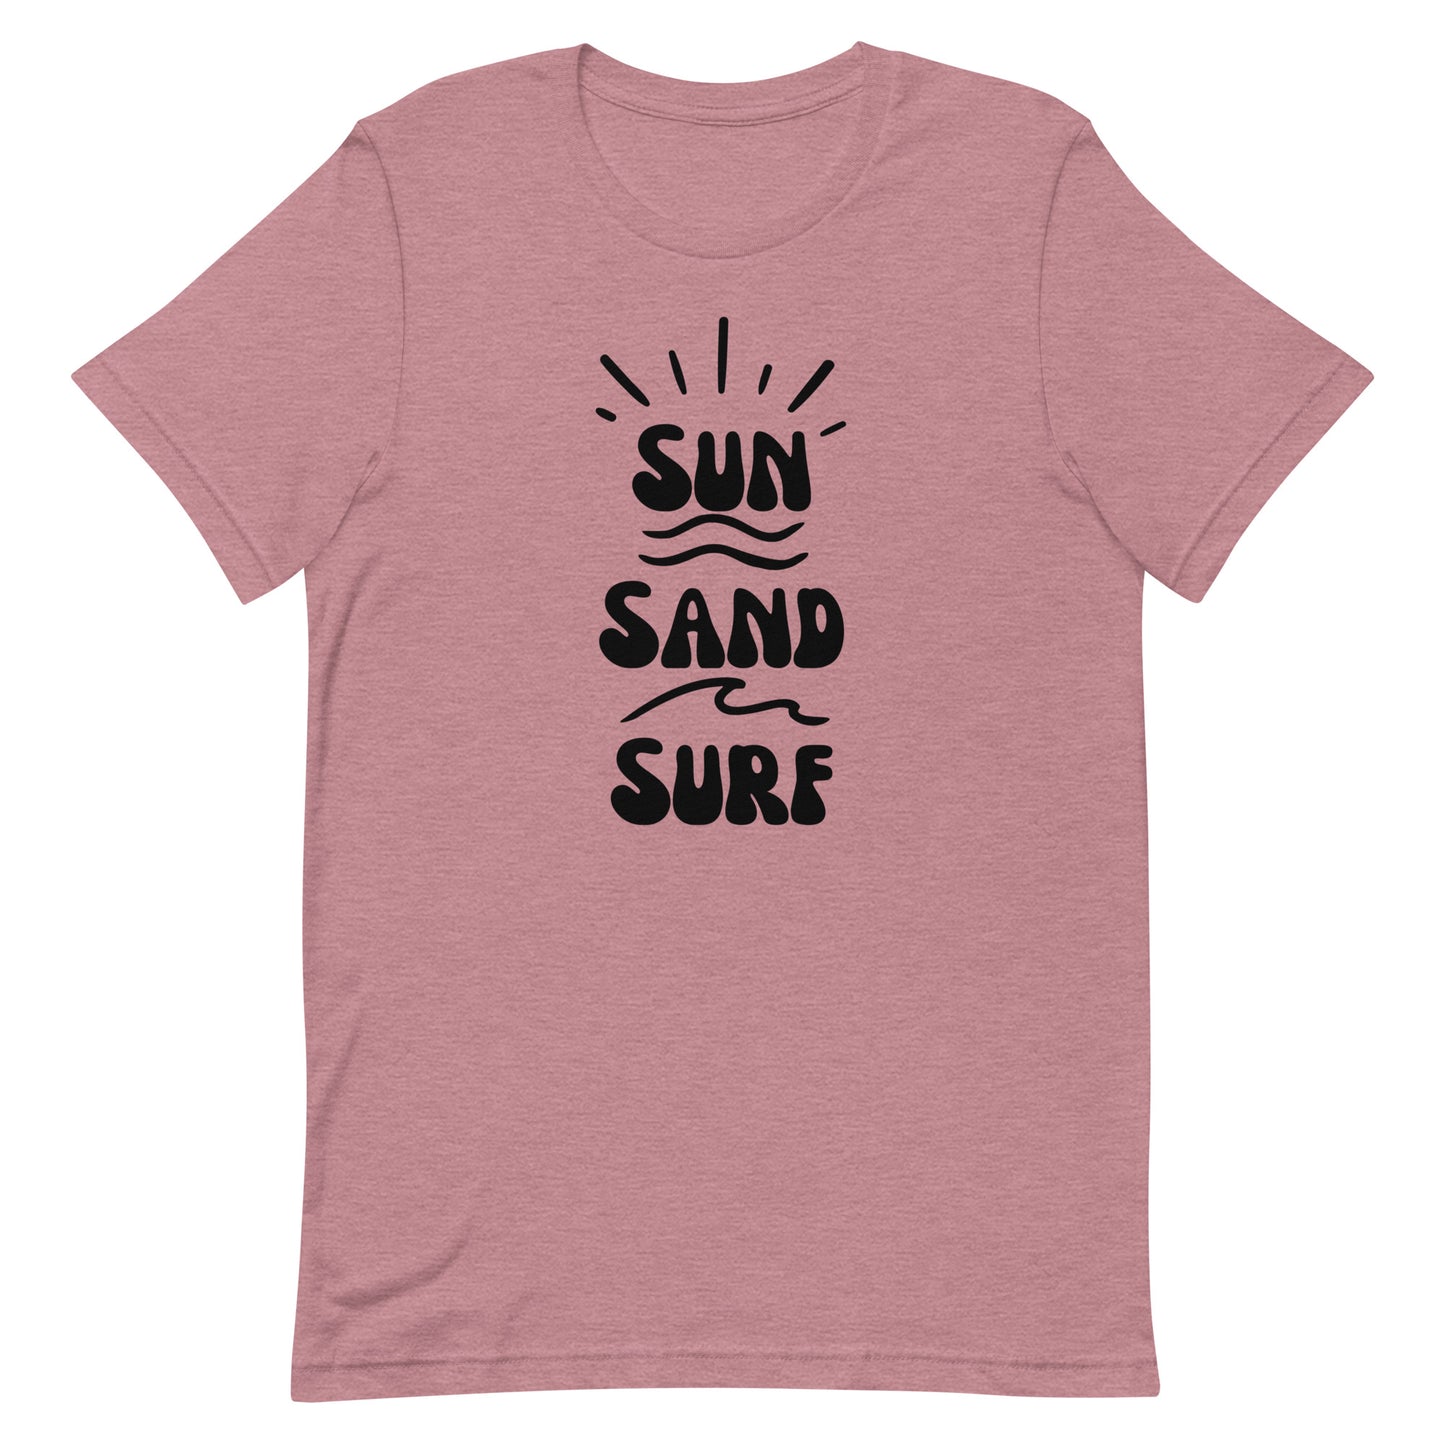 Sun T-shirt